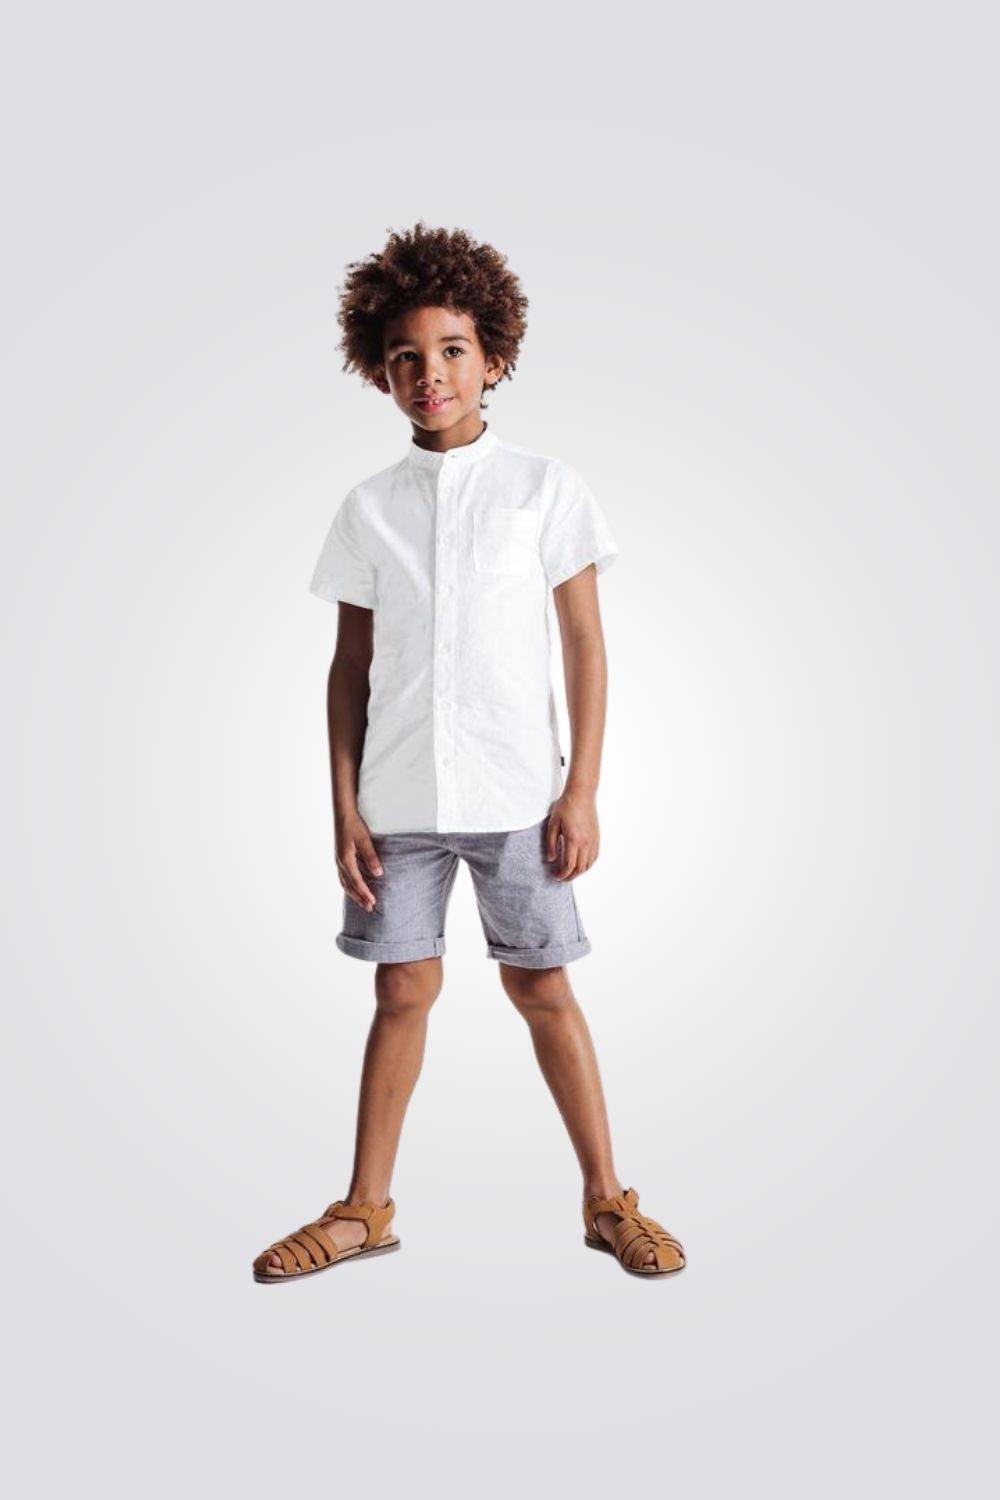 חולצה מכופתרת לבנה בנים - MASHBIR//365